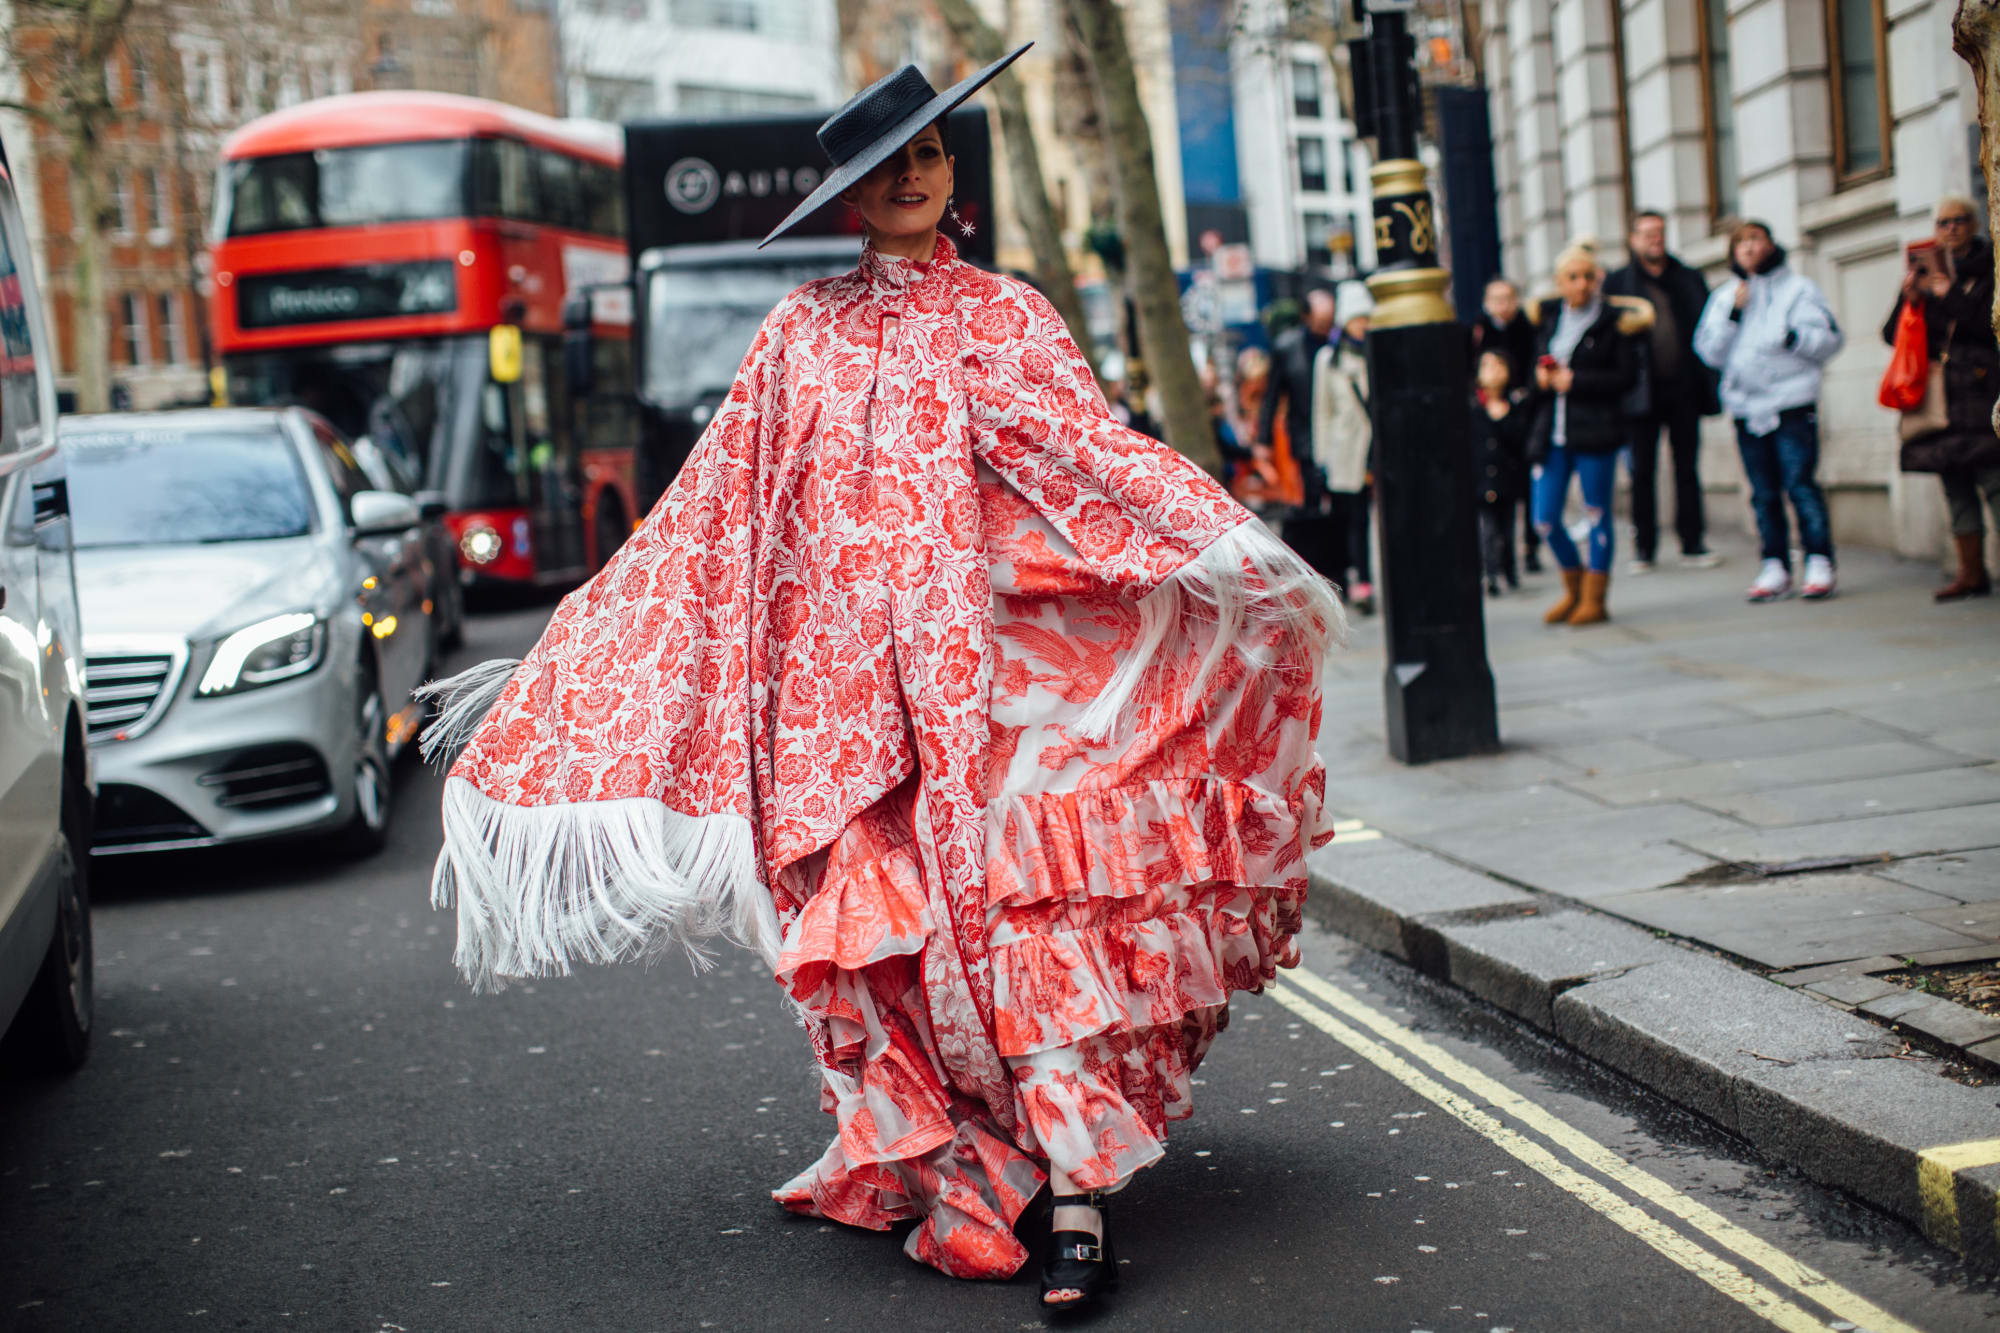 Váy hoa, đầm nhún tưng bừng, sống động trên đường phố London - 2